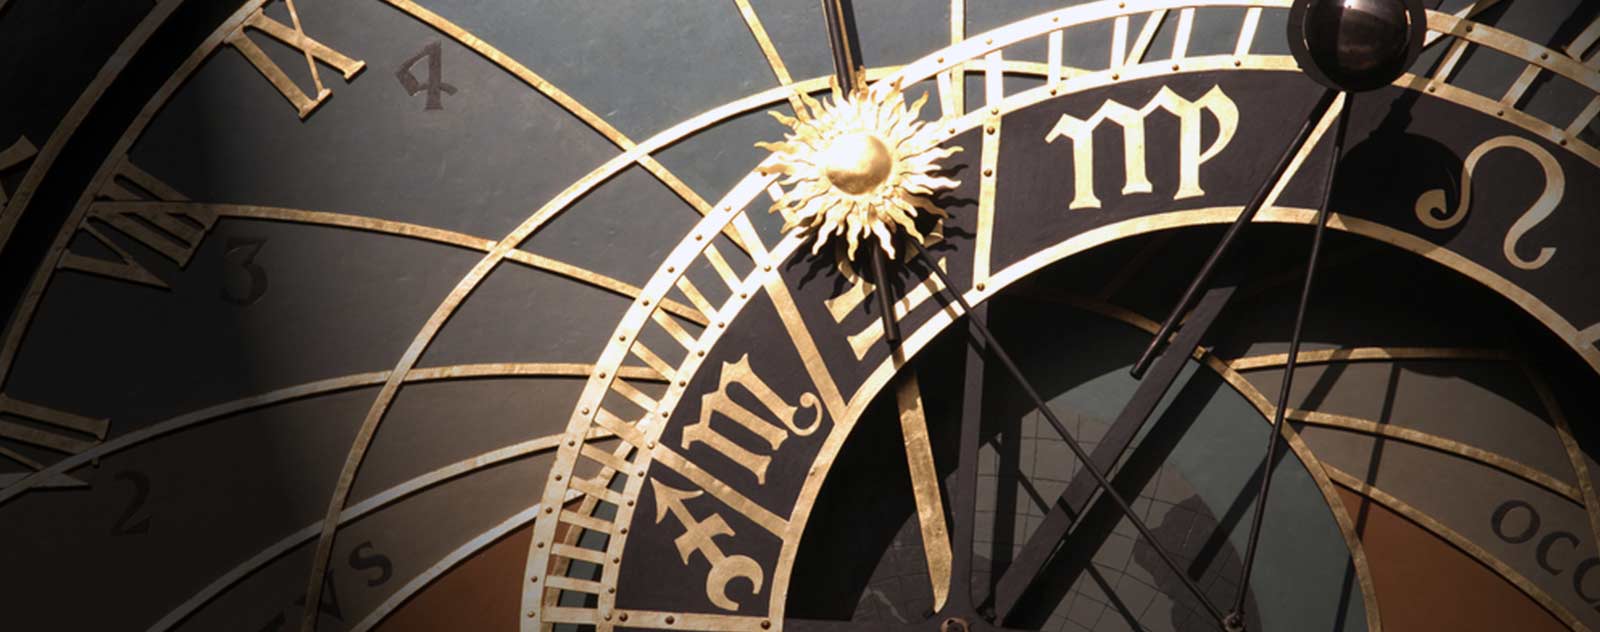 Horloge steampunk voyage dans le temps